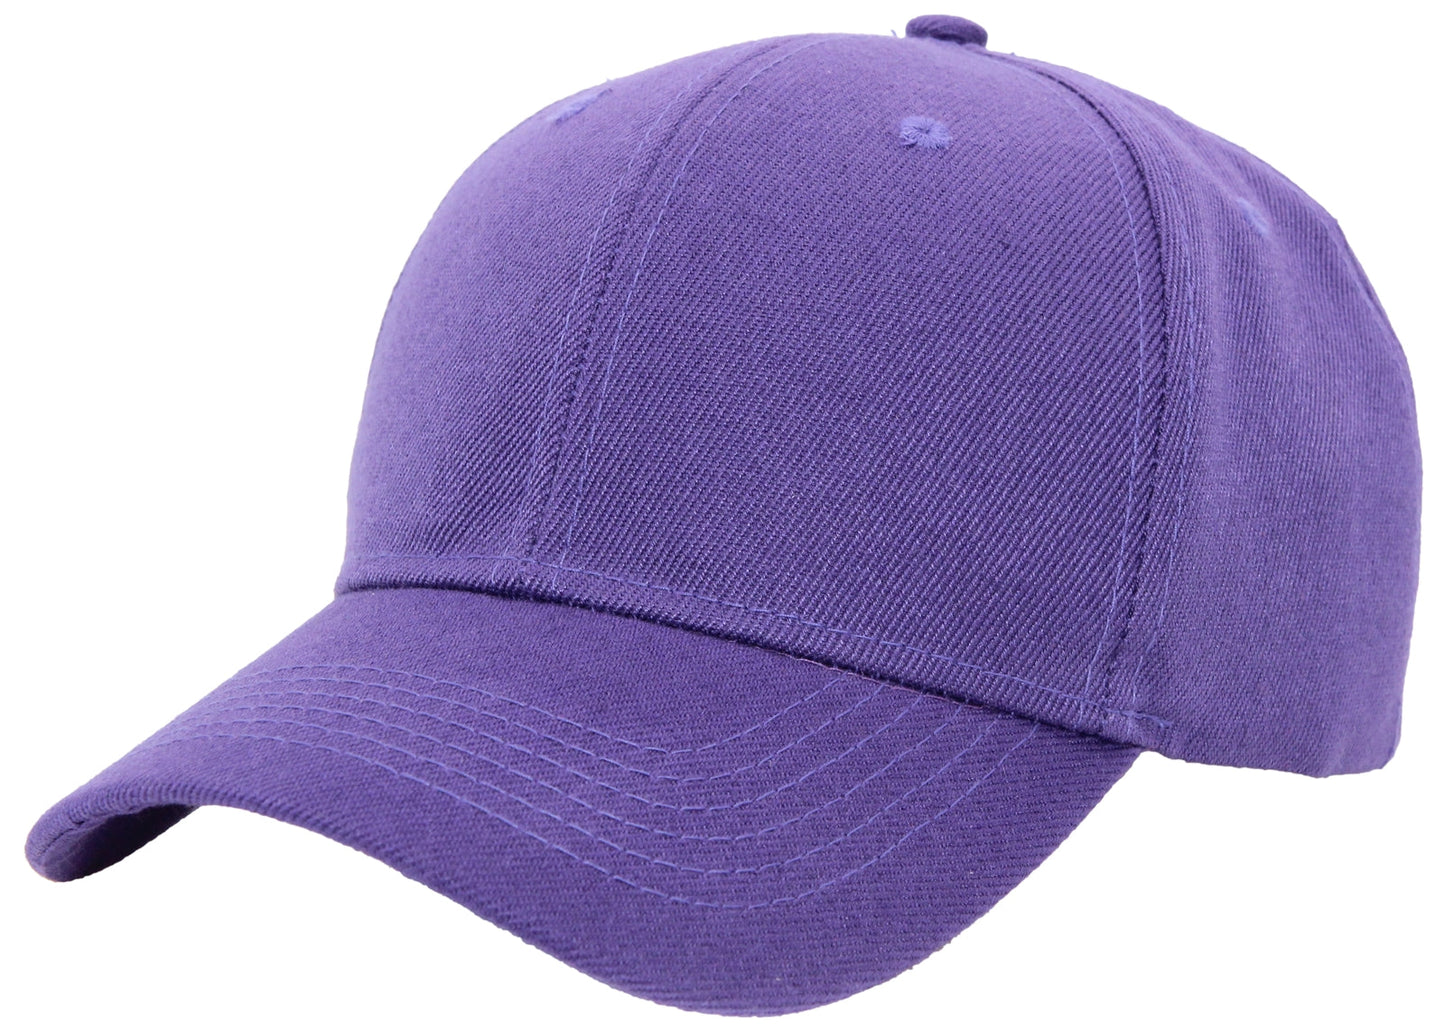 Basic velcro closure cap